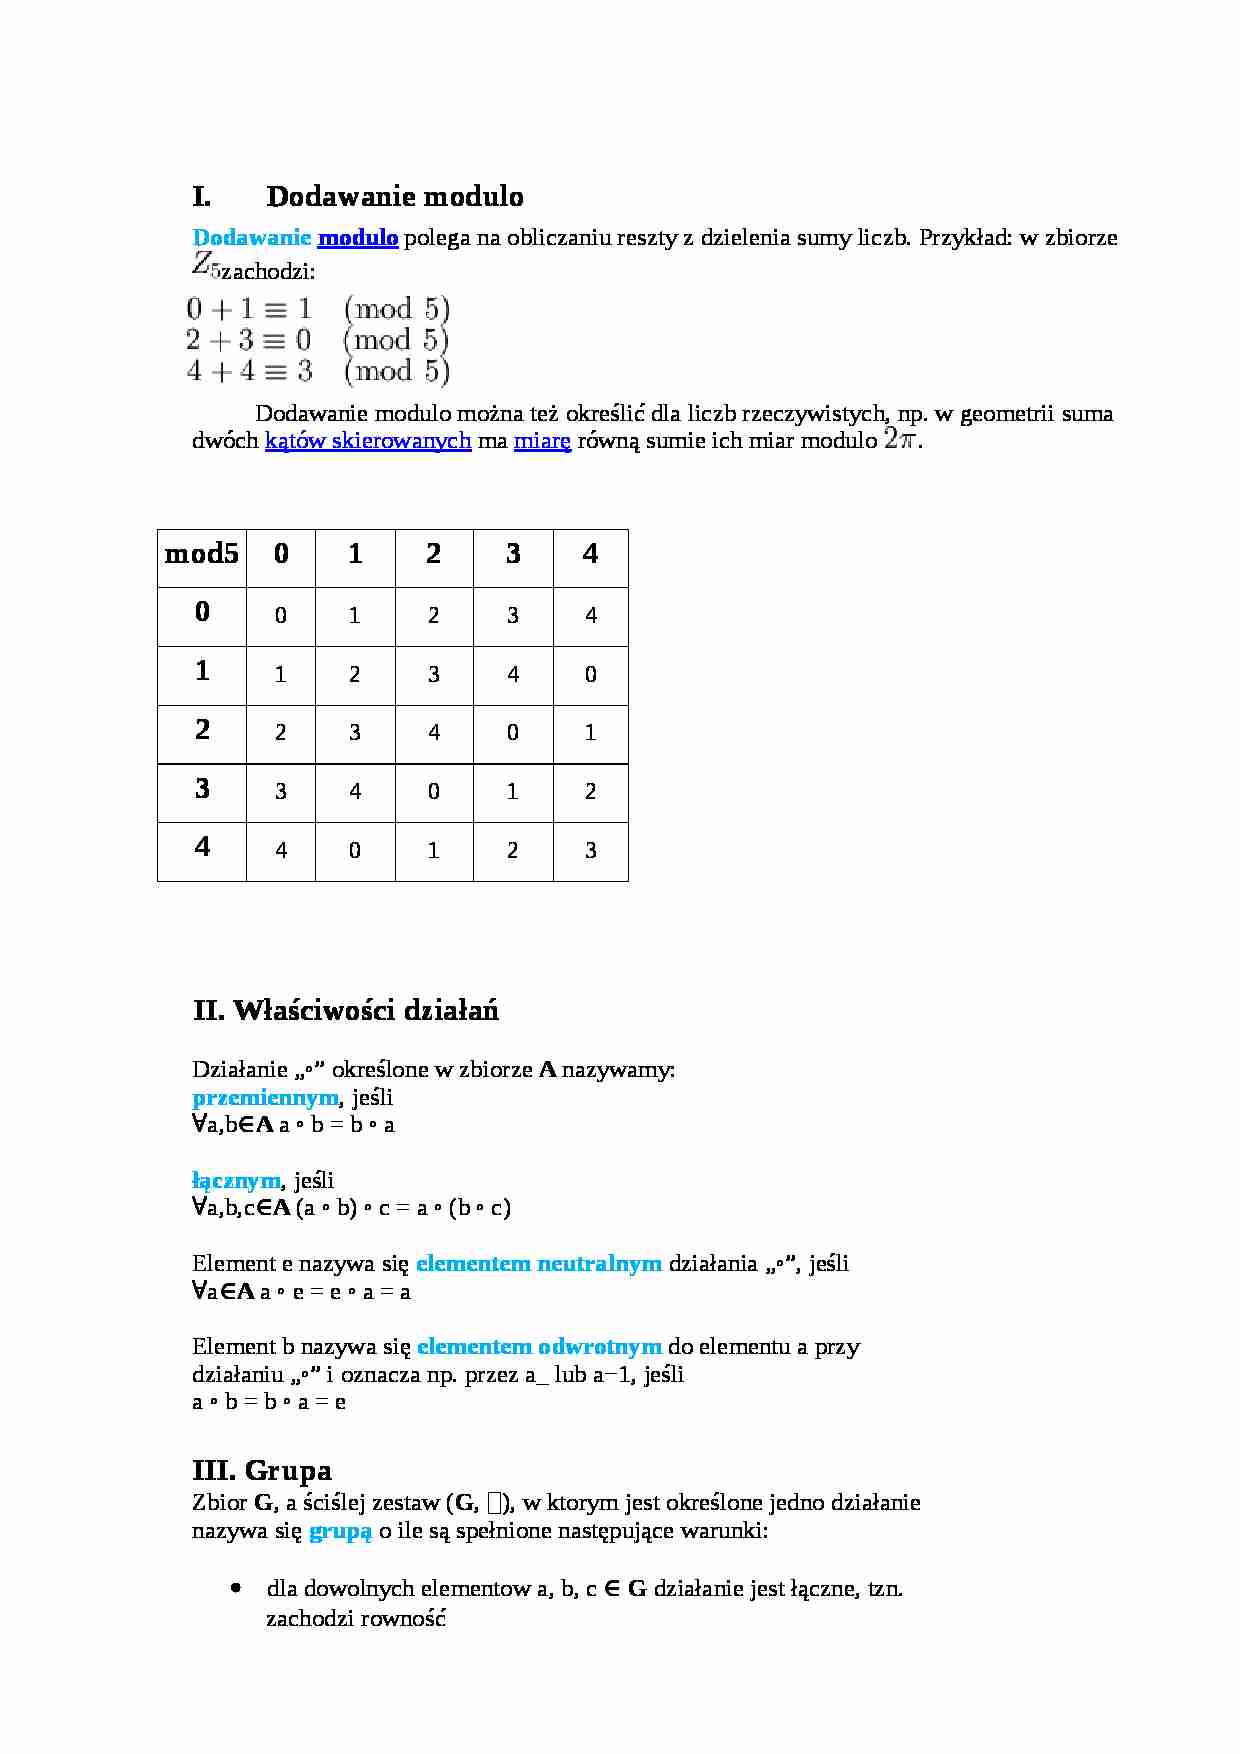 Dodawanie modulo, permutacje - grupy - strona 1